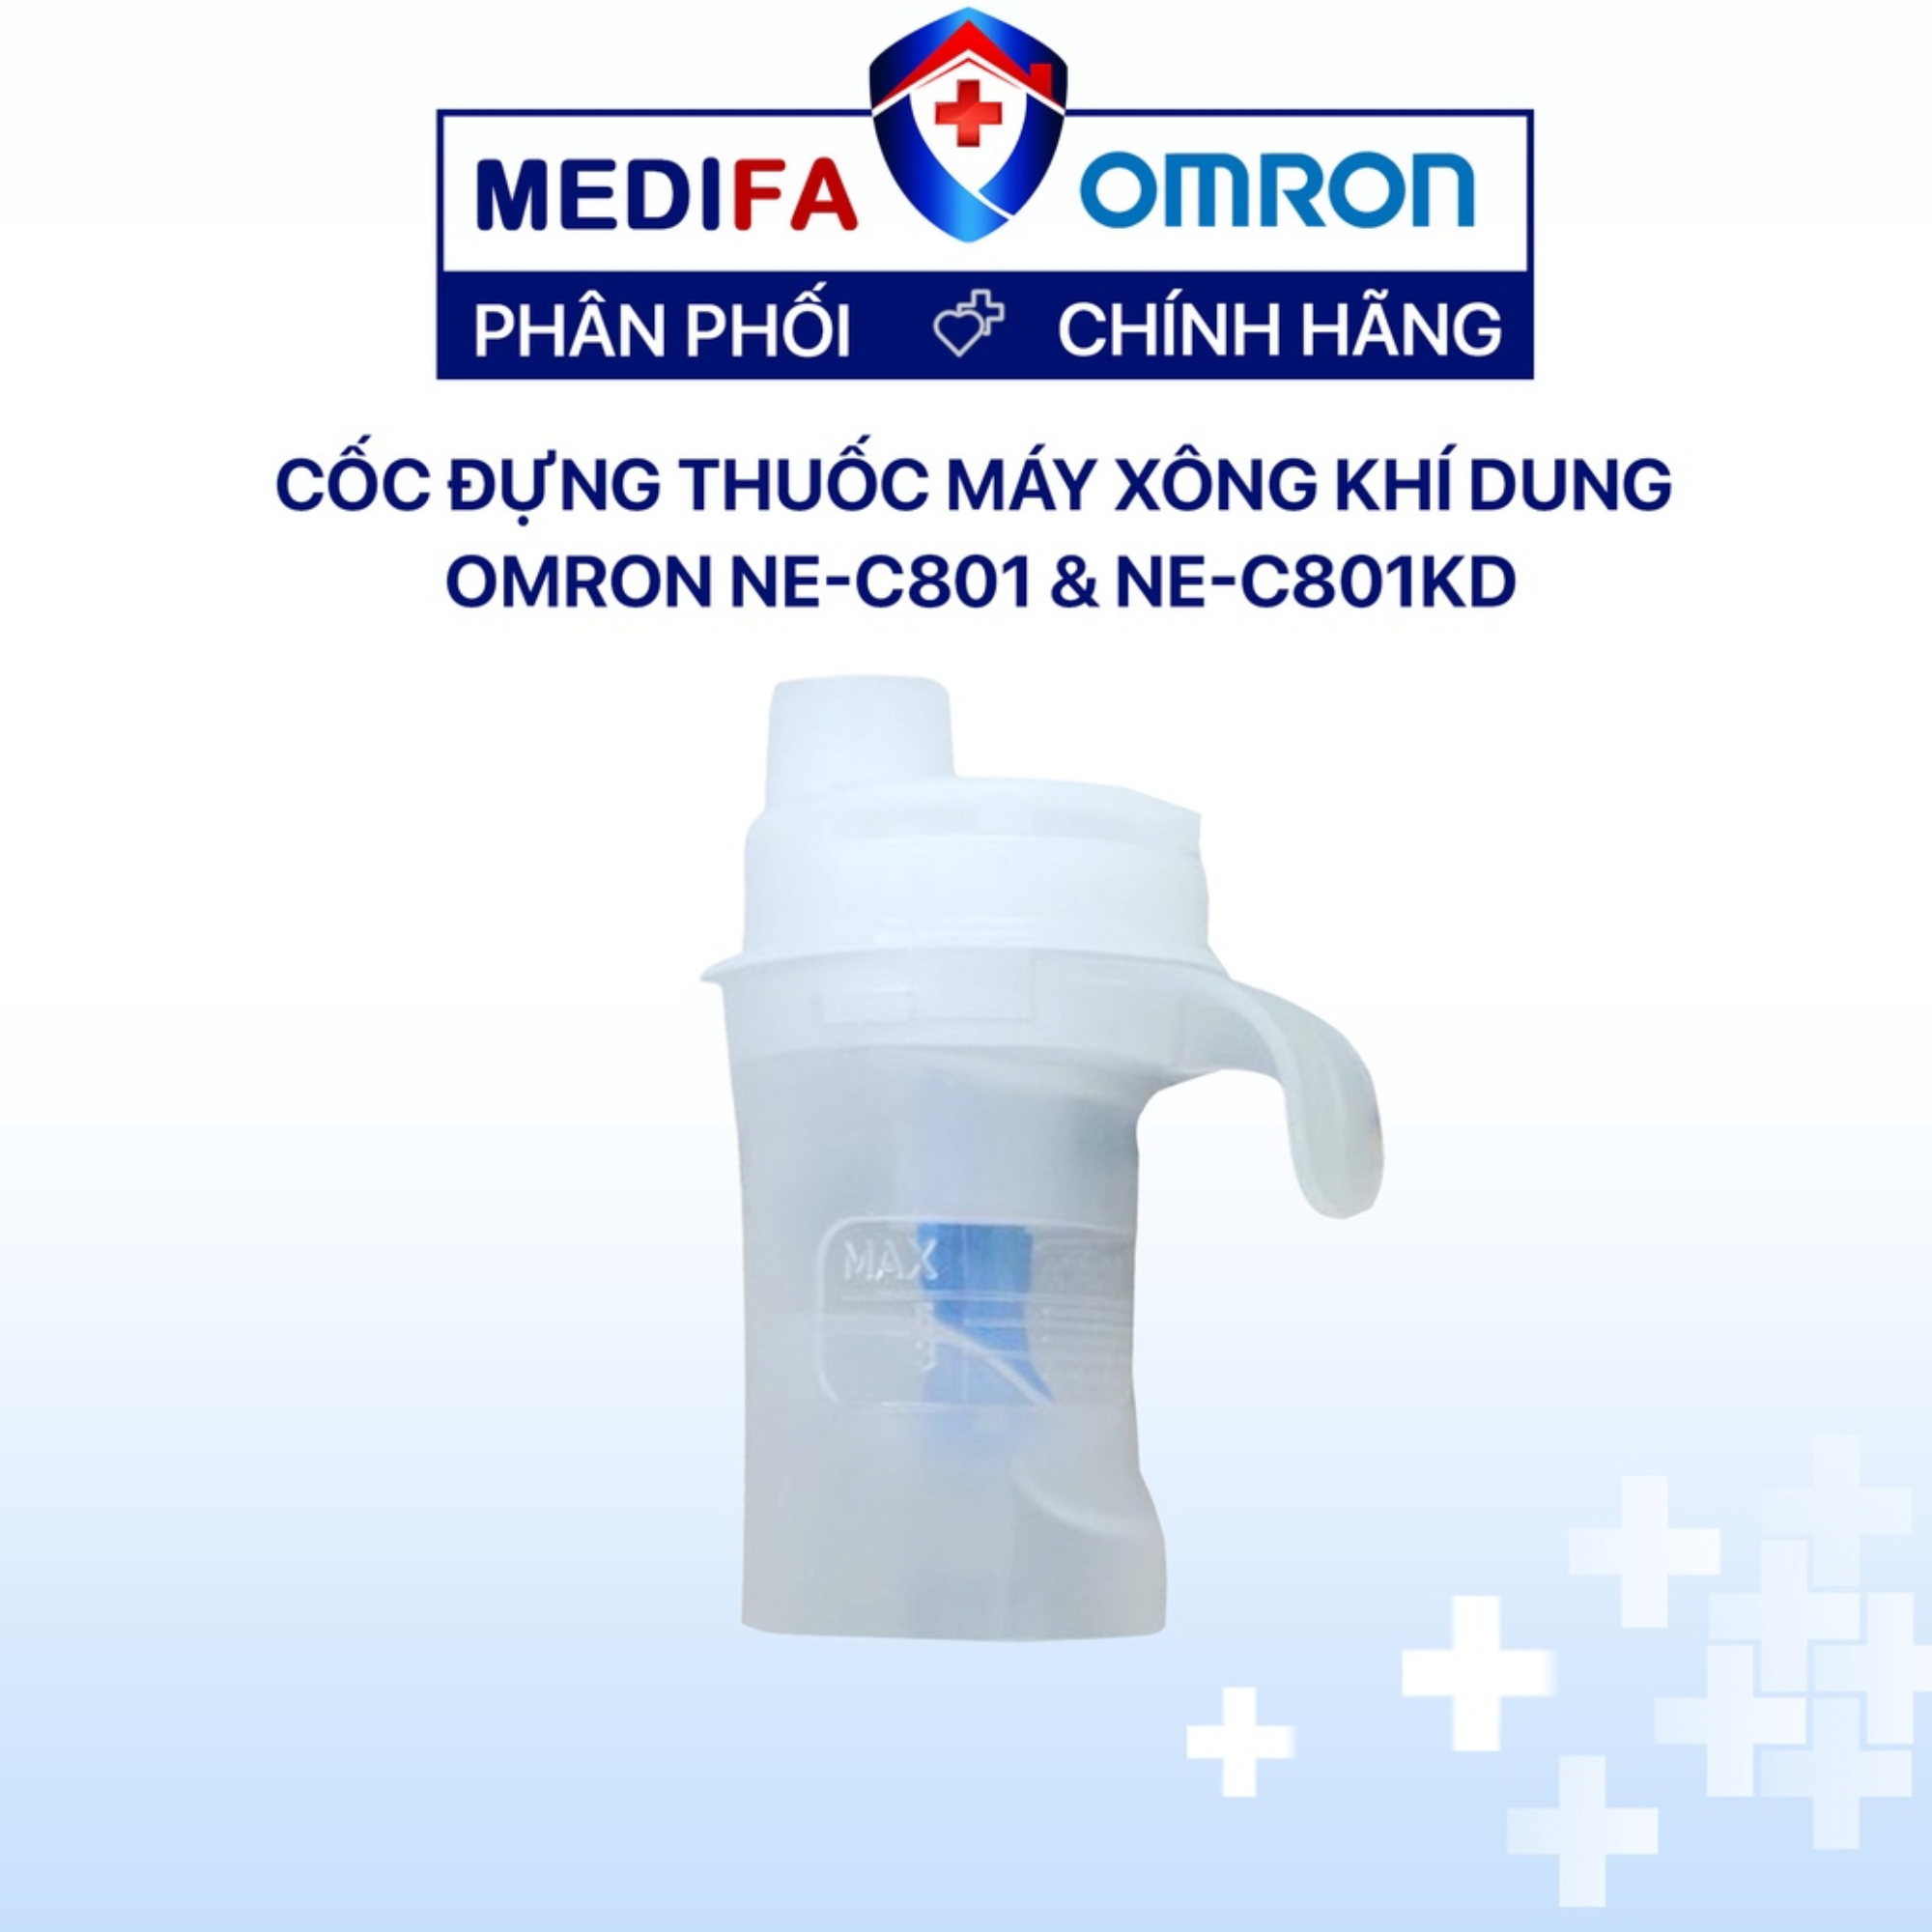 Cốc thuốc cho máy xông khí dung Omron NE-C801 và NE-C801KD an toàn